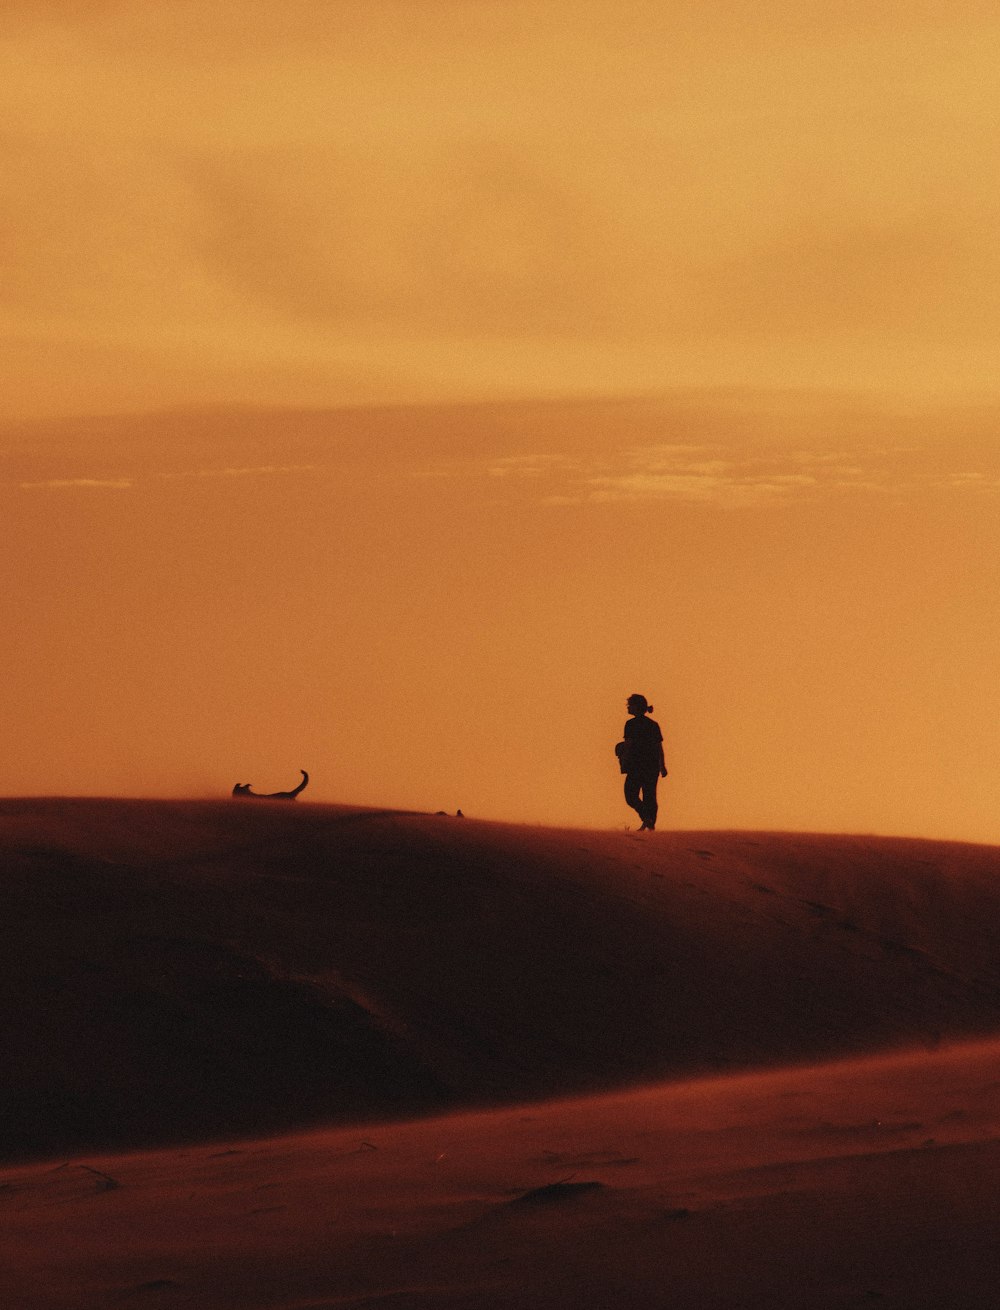 una persona caminando a través de un desierto al atardecer